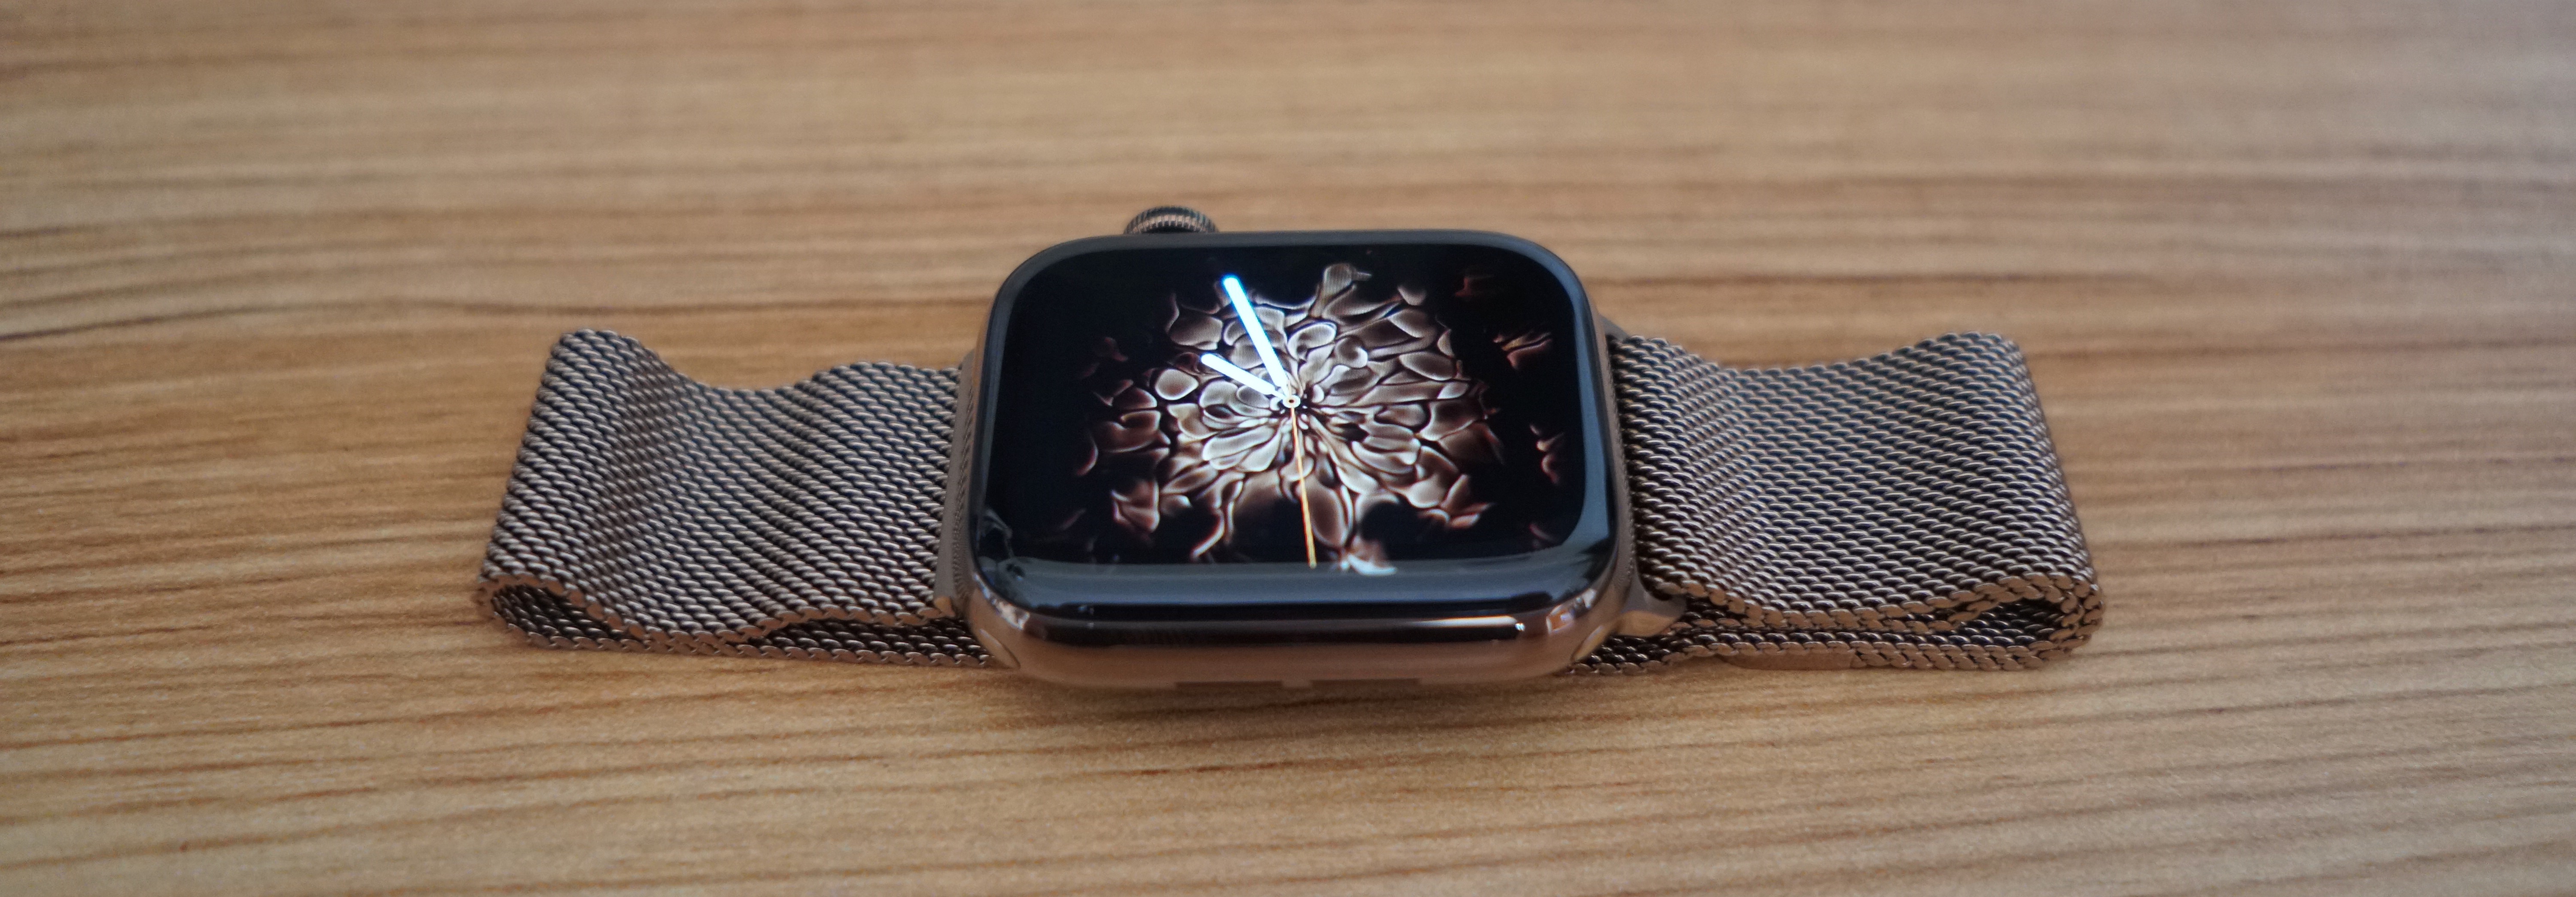 apple watch s4 44mm space grey black loop